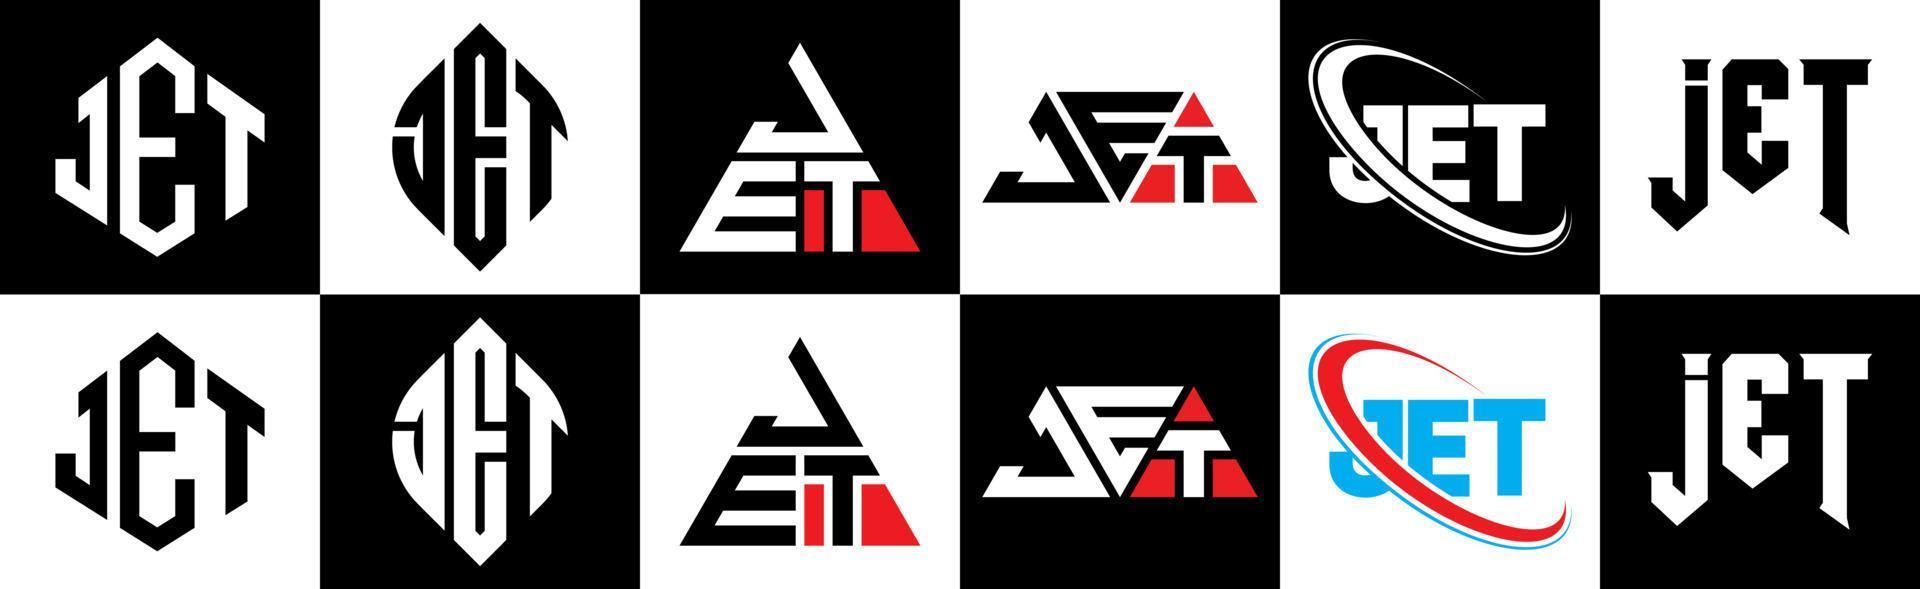 création de logo de lettre de jet dans six styles. jet polygone, cercle, triangle, hexagone, style plat et simple avec logo de lettre de variation de couleur noir et blanc dans un plan de travail. jet logo minimaliste et classique vecteur